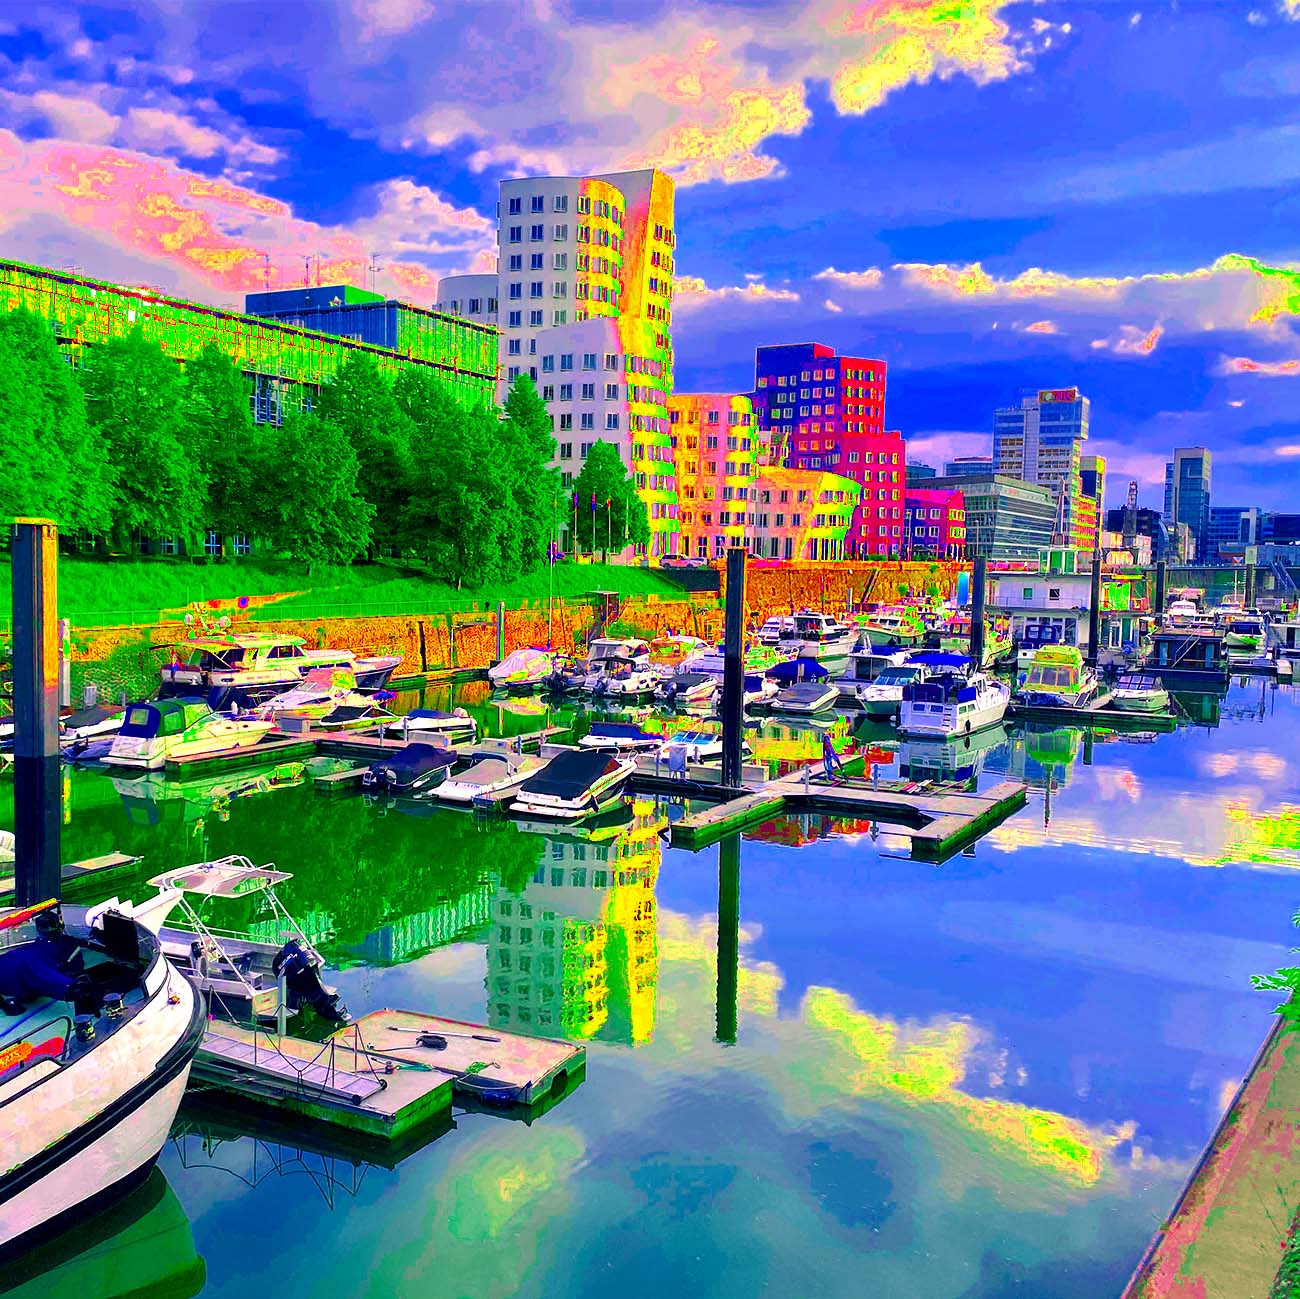 Das knallige Popartbild zeigt die Marina Düsseldorf mit Blick auf die Gehryhäuser im Düsseldorfer Medienhafen. Die Farbpalette reicht von einem intensiven Grün über blau und leuchtenden Akzenten in magenta und gelb.